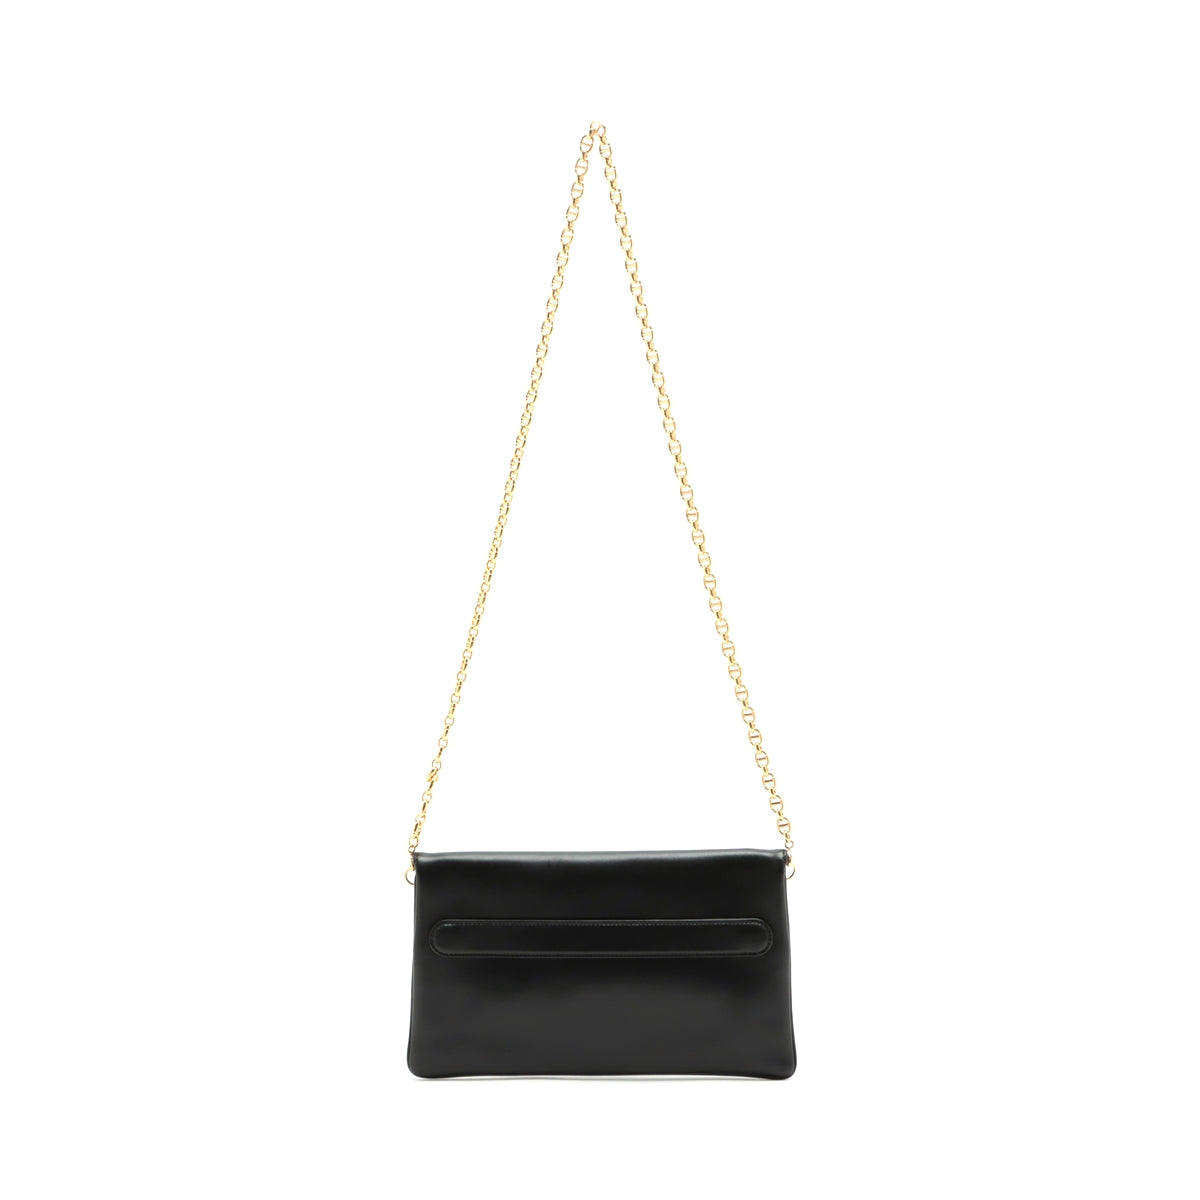 Christian Dior Leather Chain shoulder bag Black